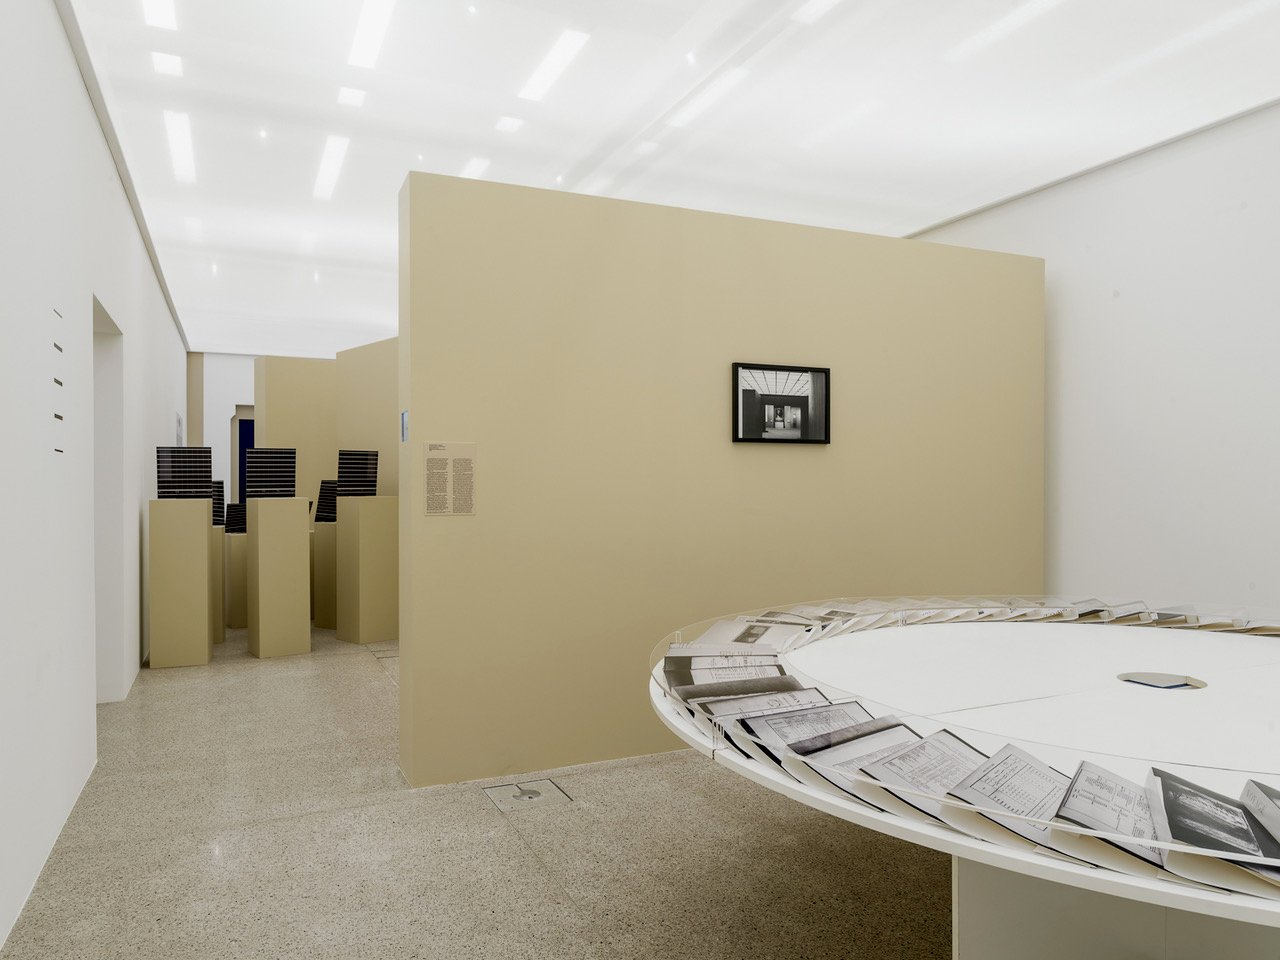 Fotografie eines Ausstellungsraumes mit beigen Trennwänden auf denen Kunstwerke plaziert sind, im Vordergrund ein runder weißer Tisch mit Mappen die im Kreis aufgelegt wurden ,links hinten schwarze Gegenstände auf Podesten